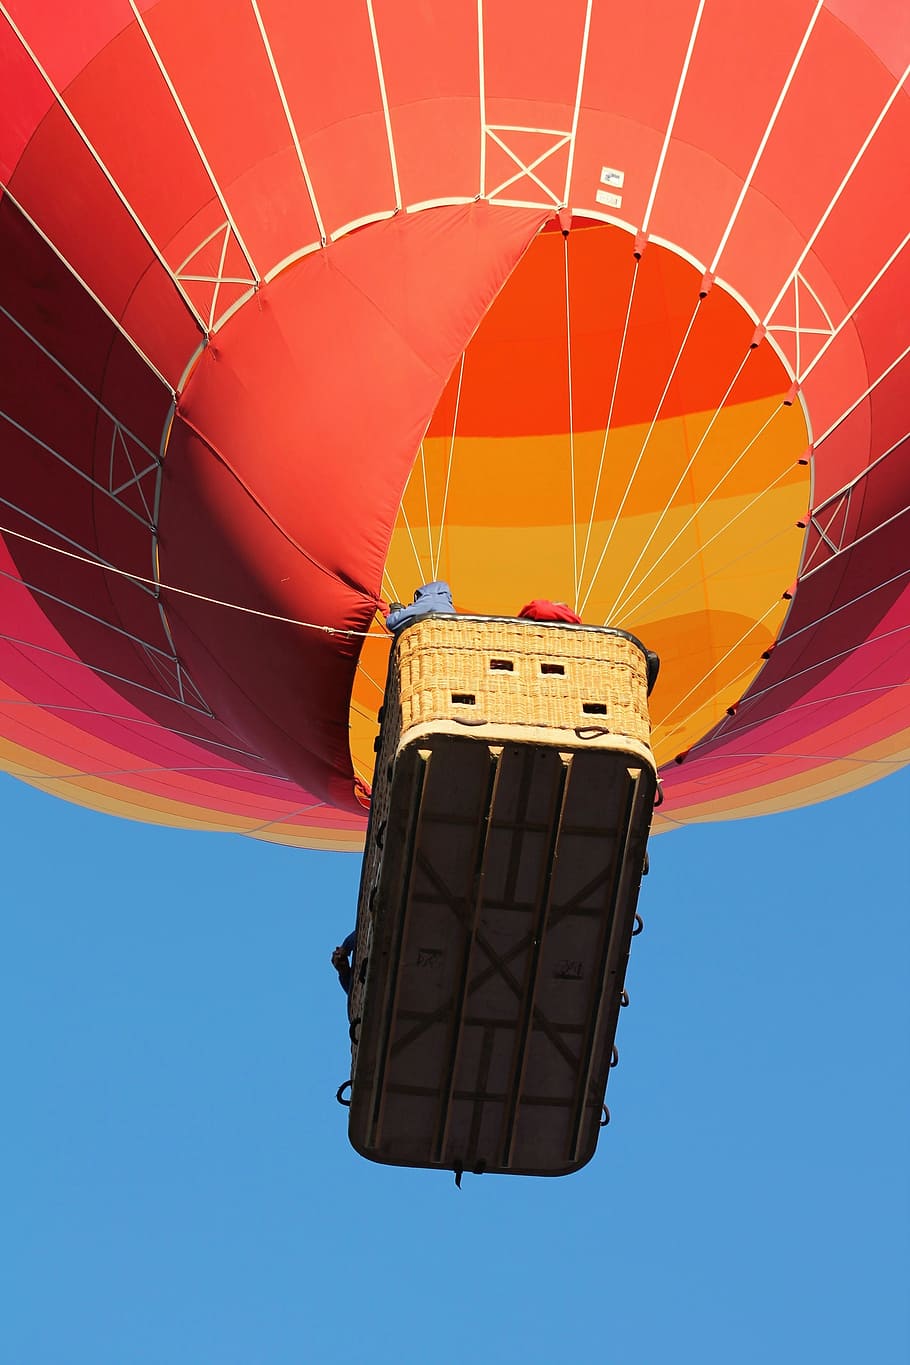 balon udara panas, balon pesta albuquerque, balon, langit, warna-warni, biru, pola, penerbangan, perjalanan, kesenangan